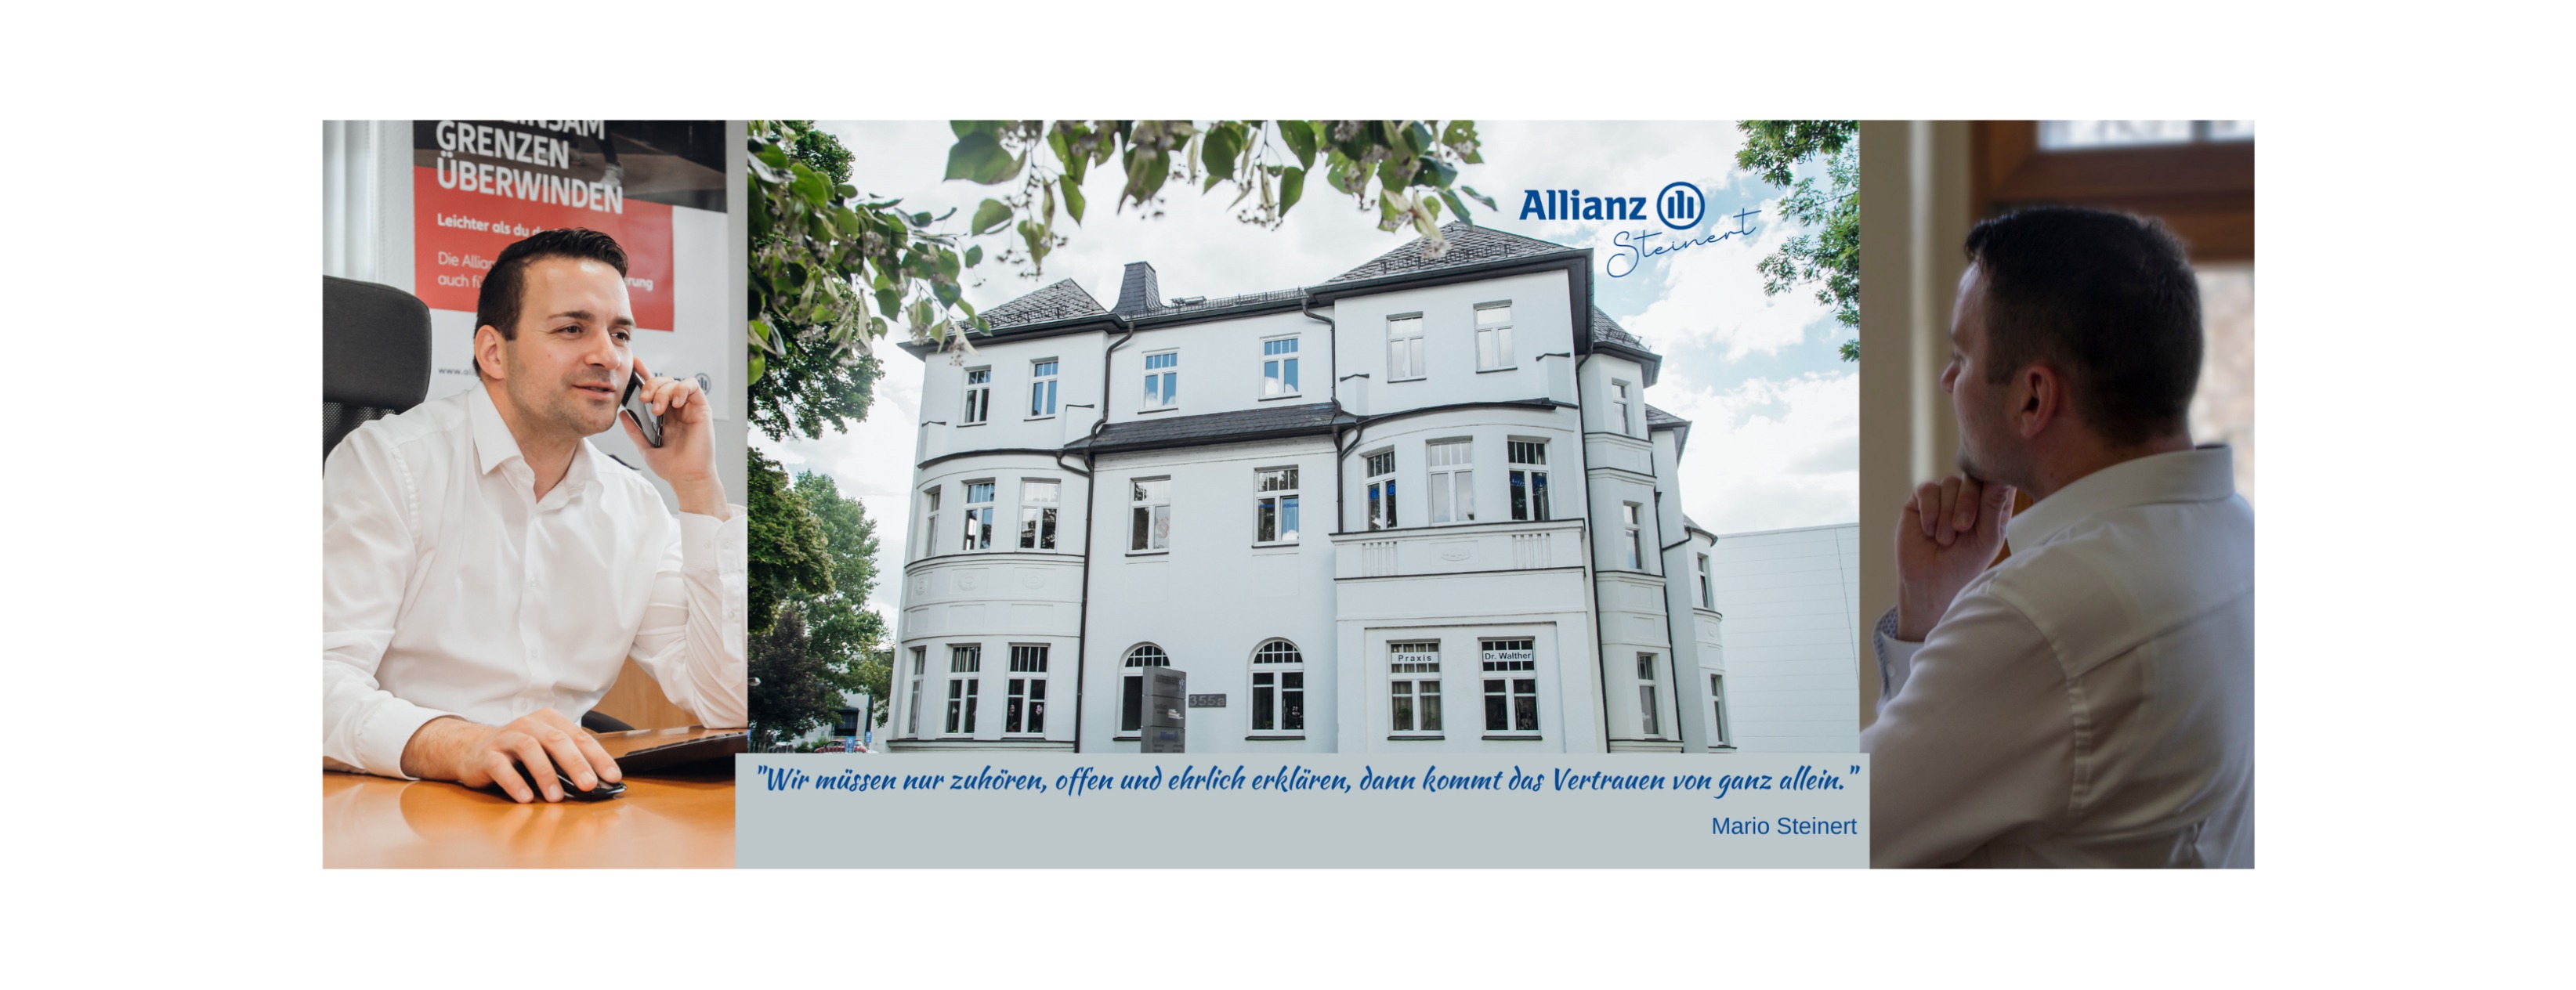 Allianz Versicherung Mario Steinert Chemnitz - Allianz Chemnitz bAV Altersvorsorge Mario Steinert